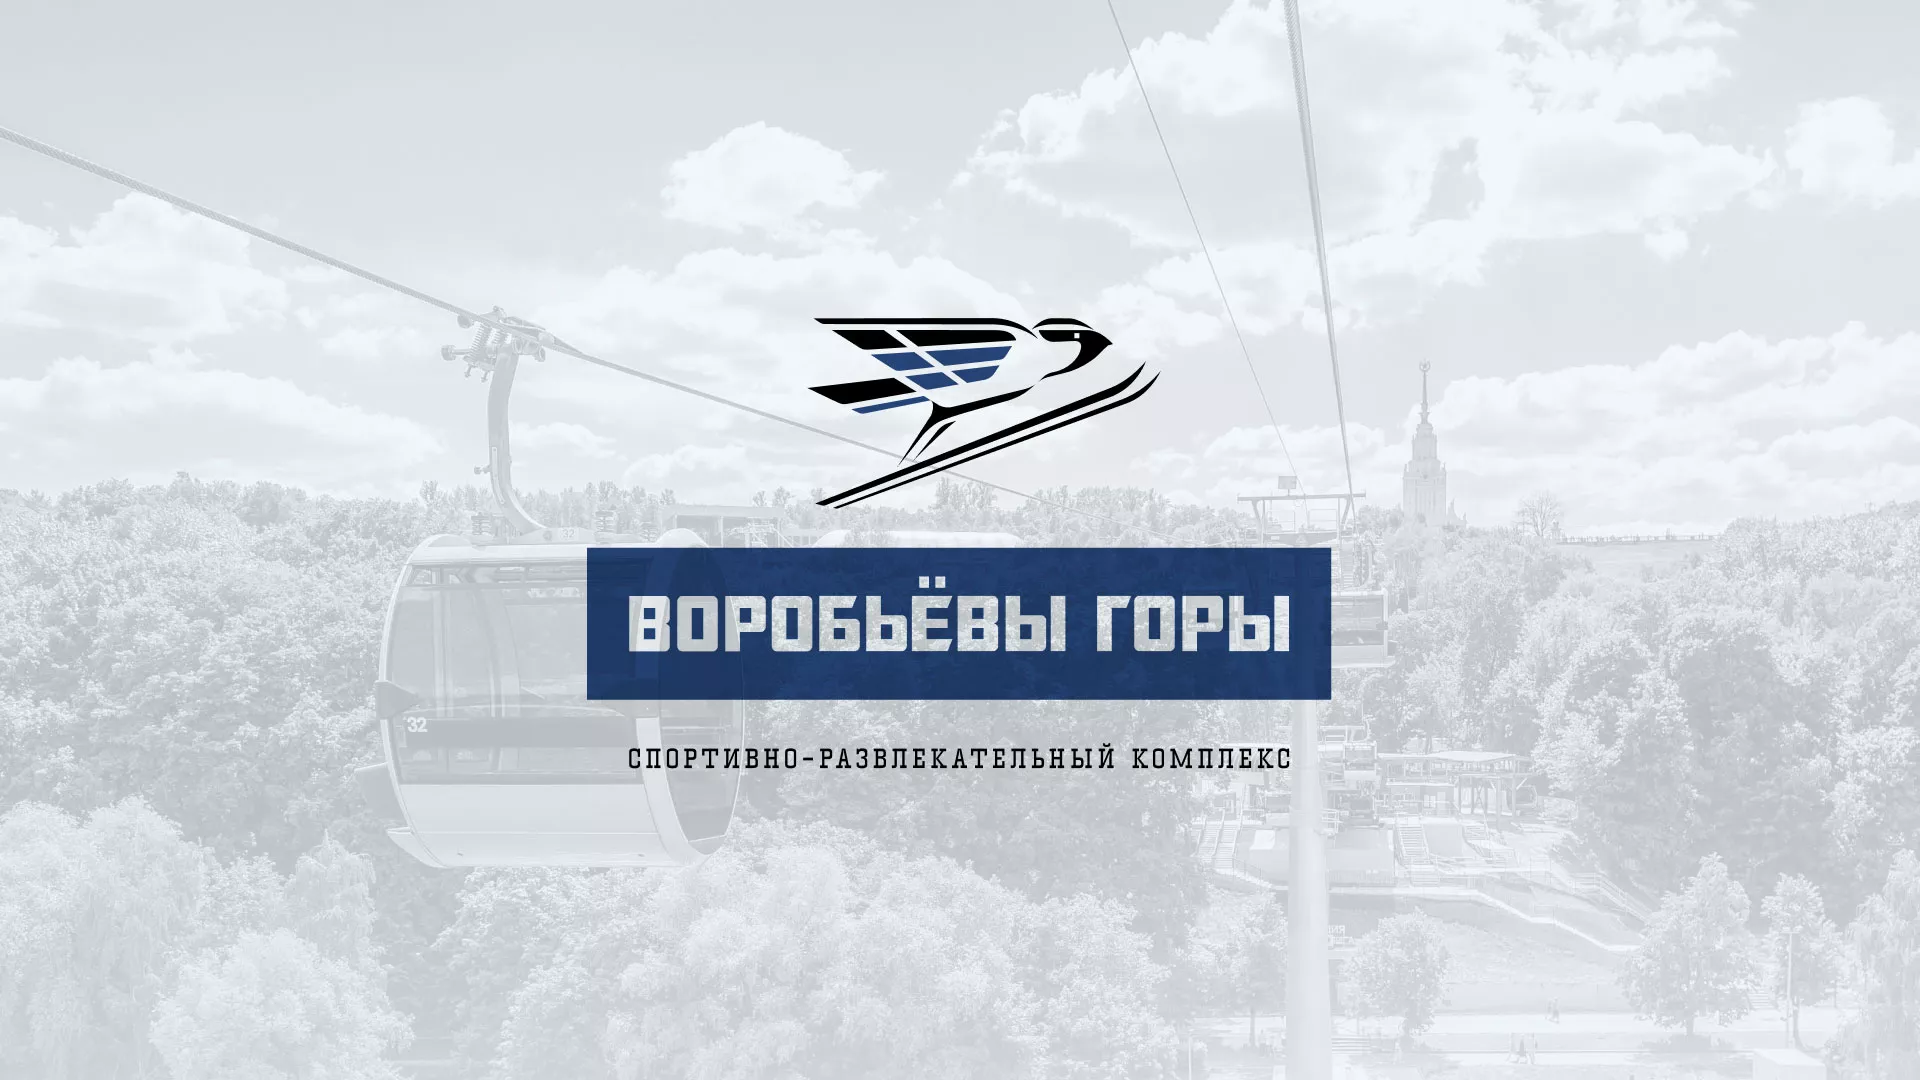 Разработка сайта в Черногорске для спортивно-развлекательного комплекса «Воробьёвы горы»